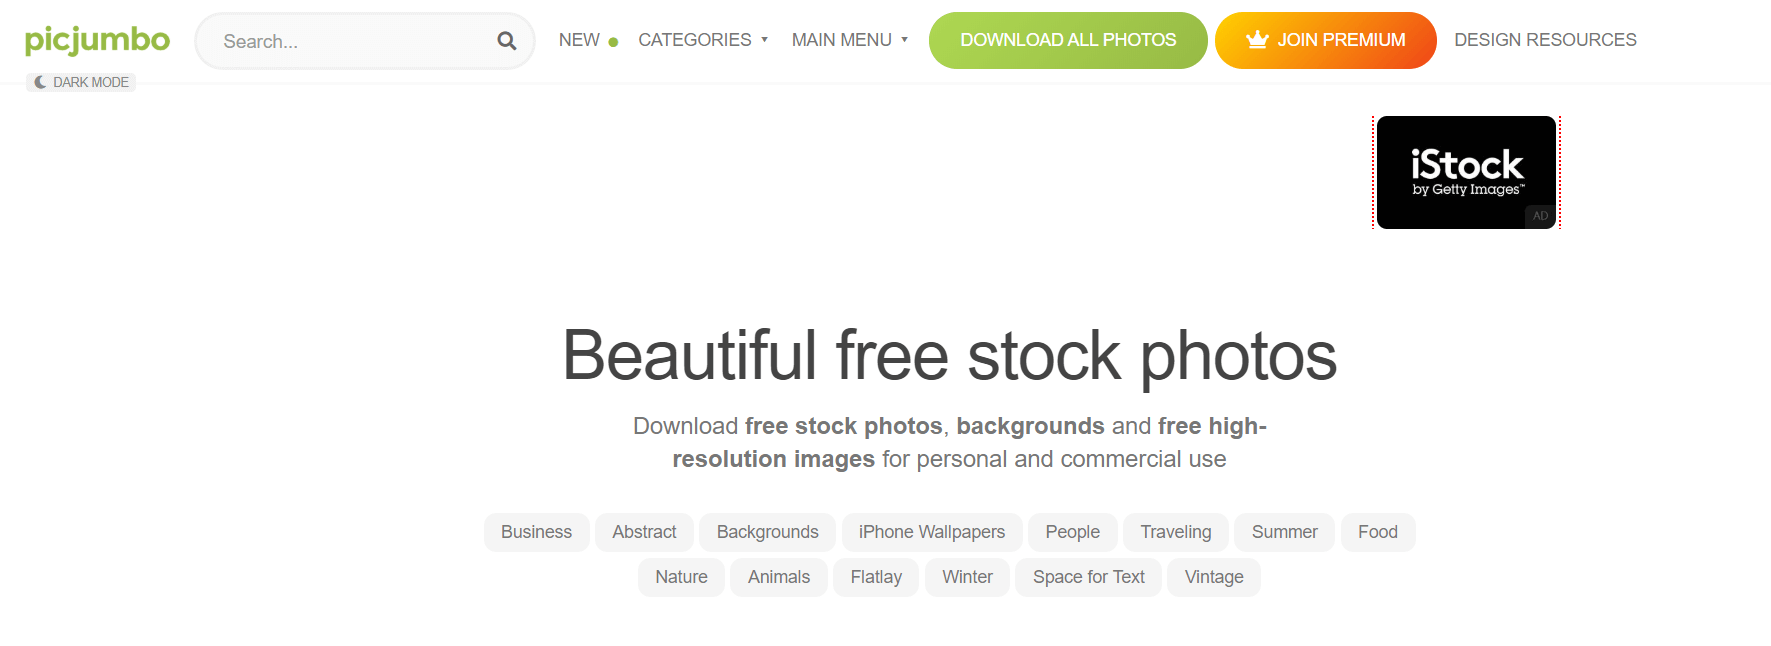 Picjumbo - Best Free Stock Photo Websites